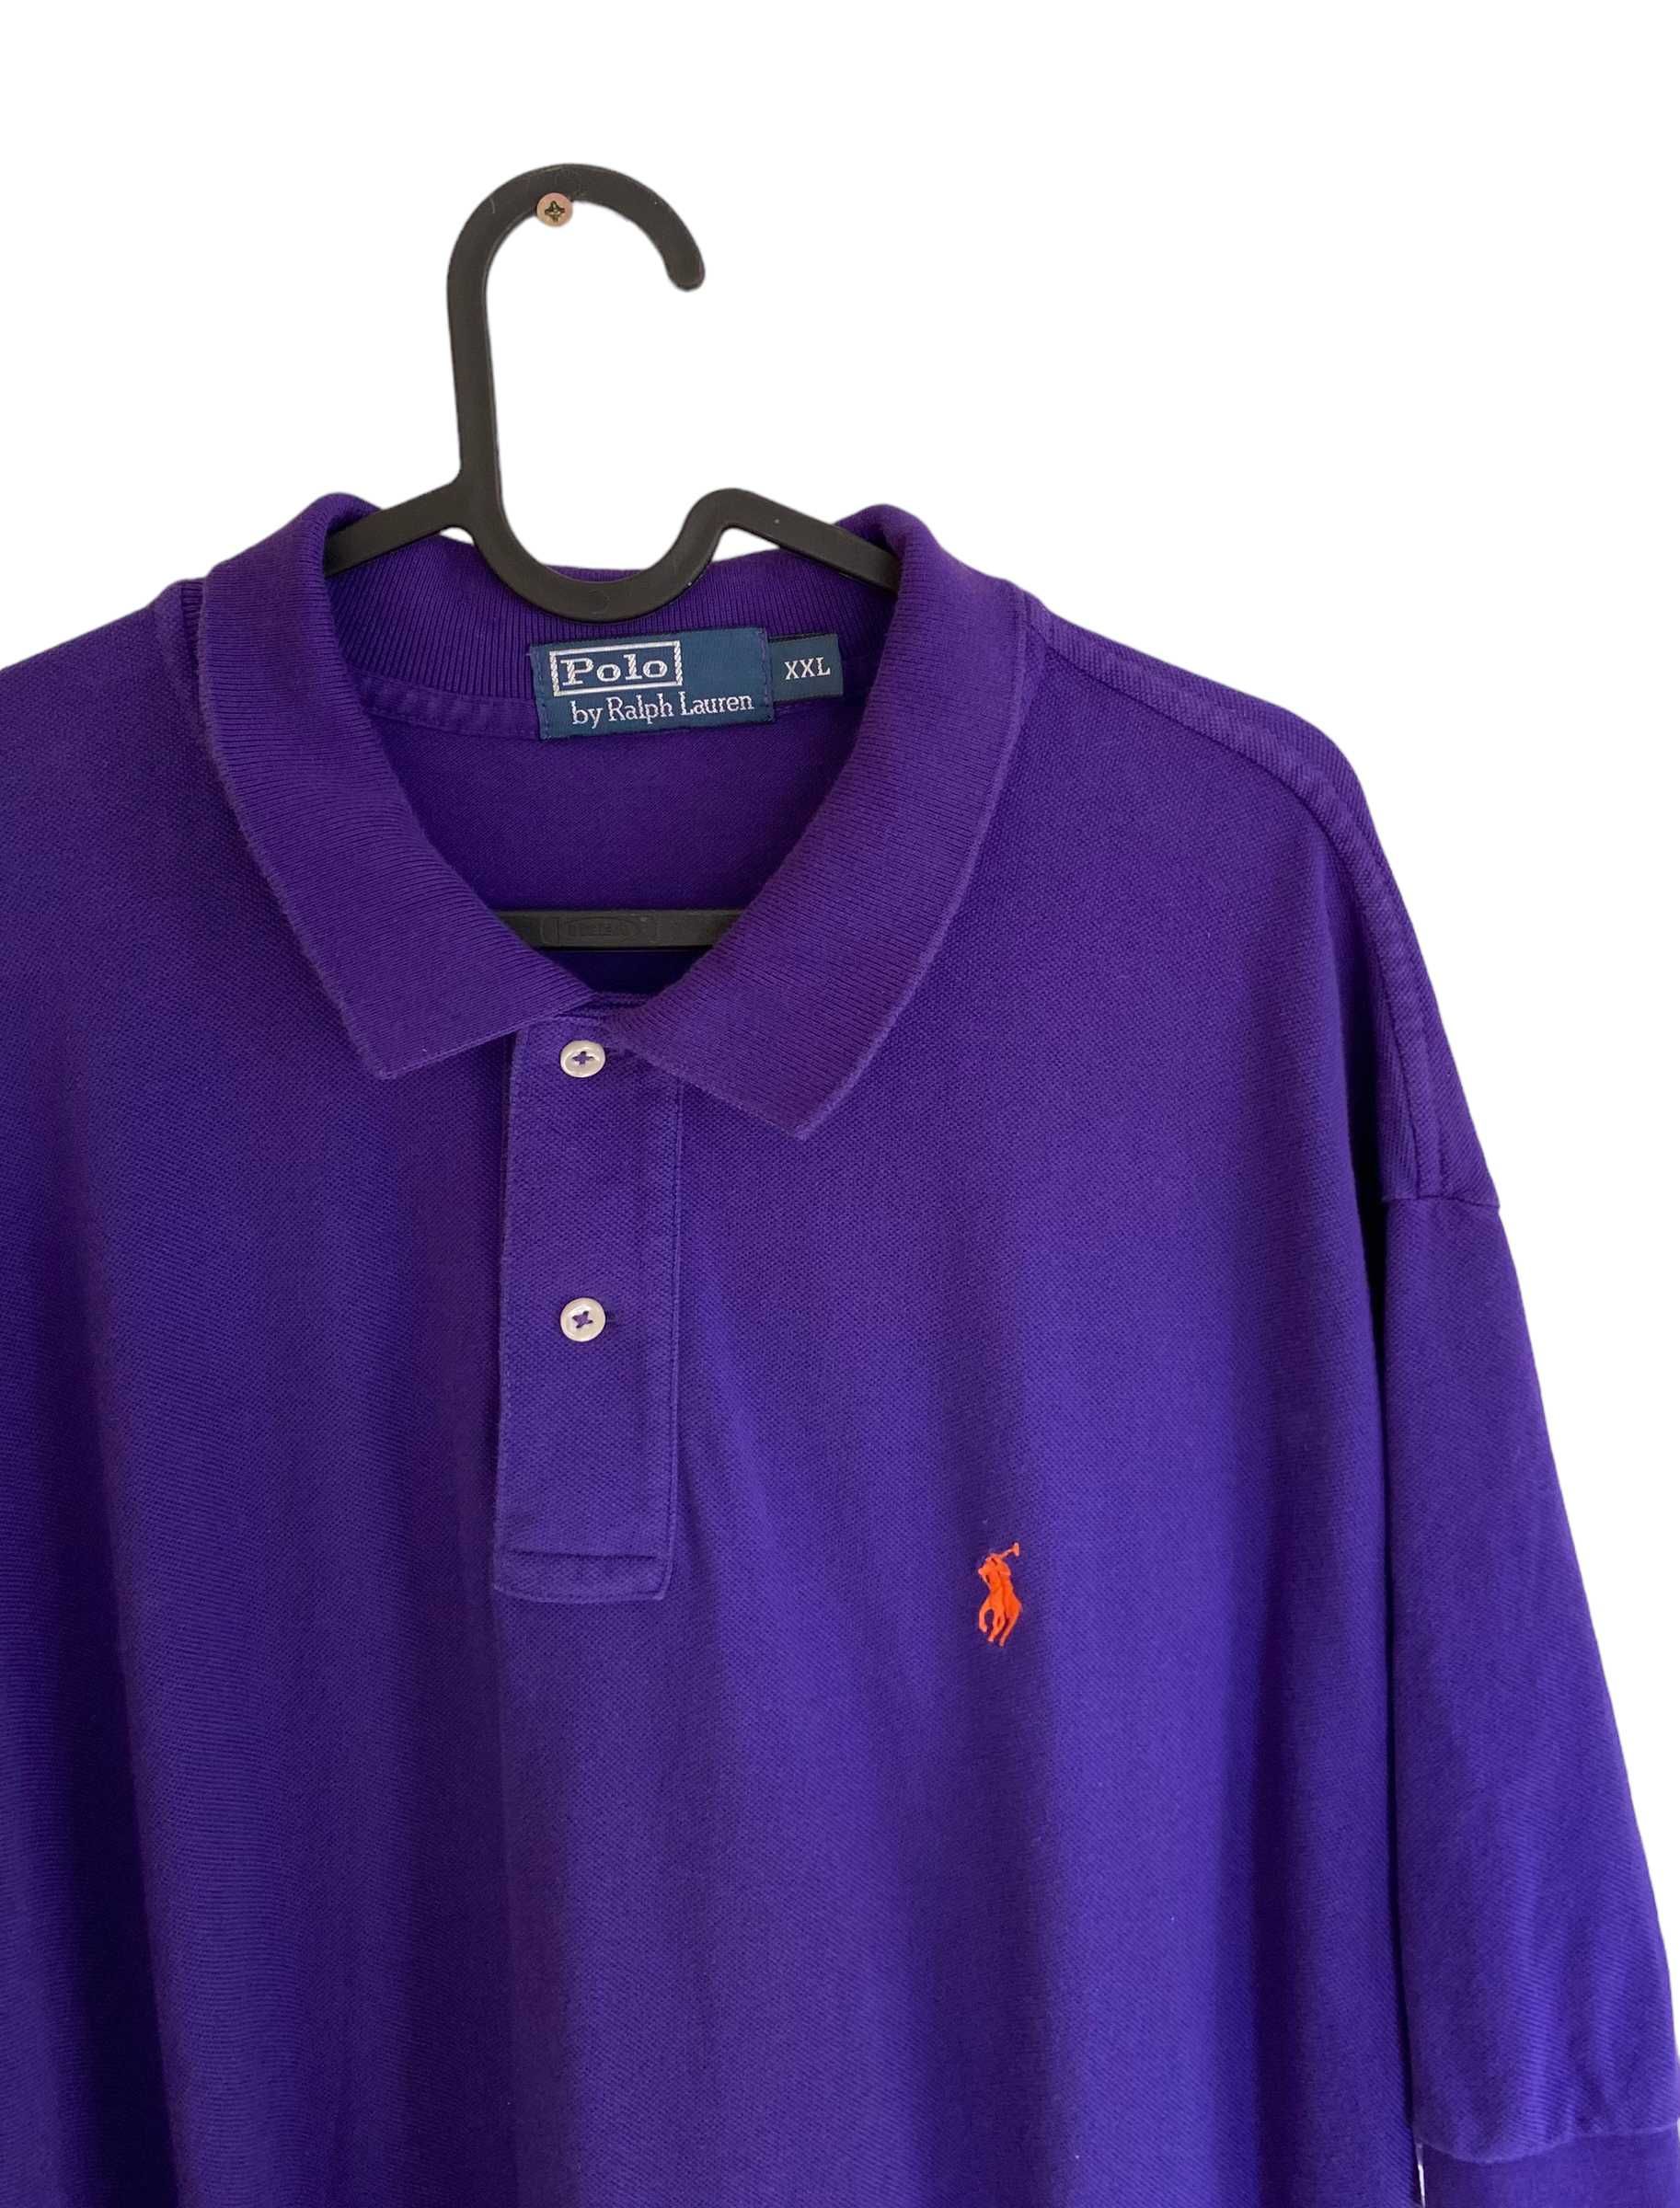 Polo Ralph Lauren koszulka polo, rozmiar XXL, stan bardzo dobry